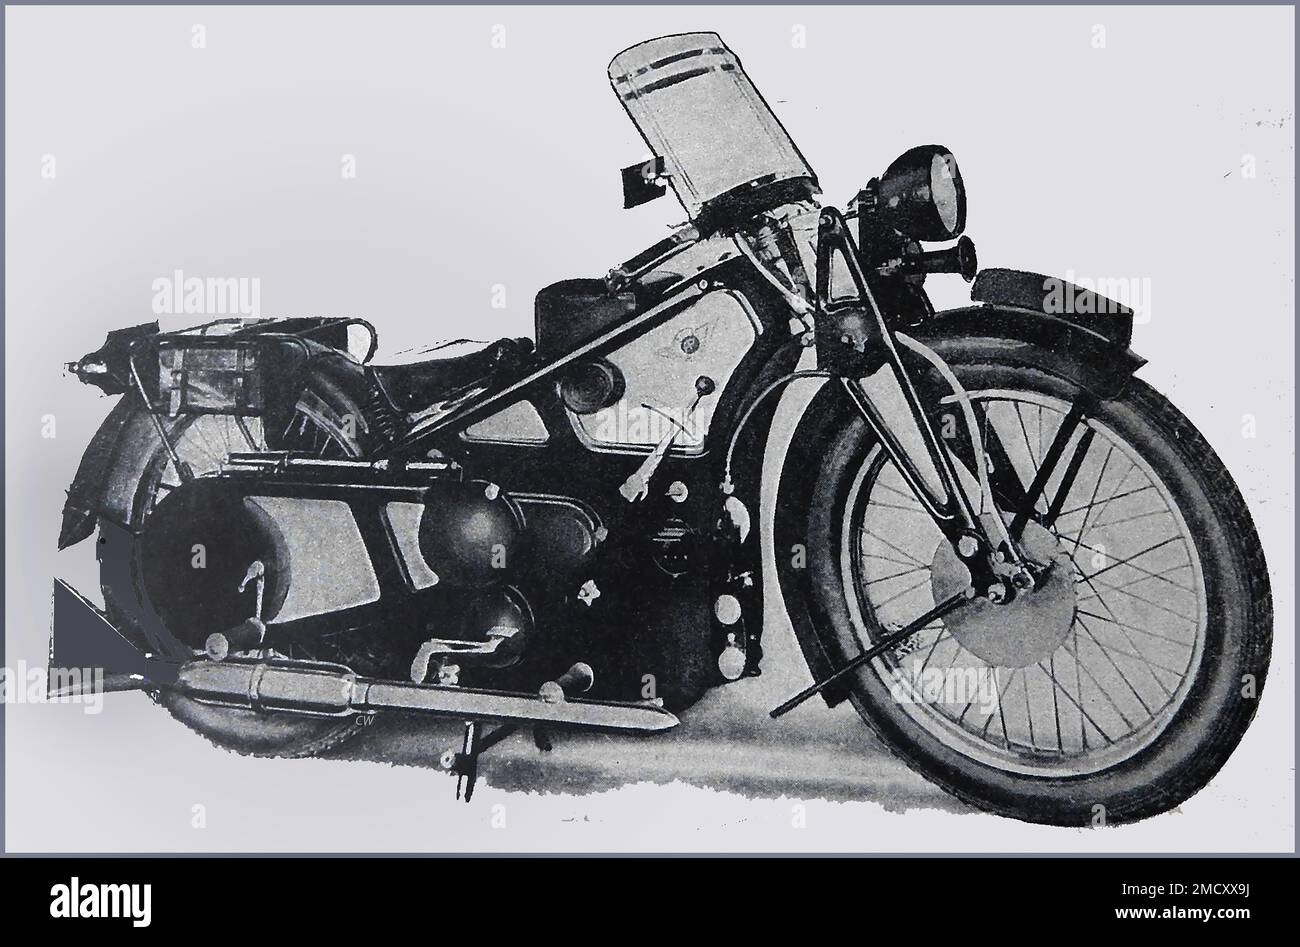 Eine Zeitschrift aus dem Jahr 1930 zeigt ein britisches Motorrad, dessen Motorraum vollständig mit Metallblechen bedeckt ist. Stockfoto